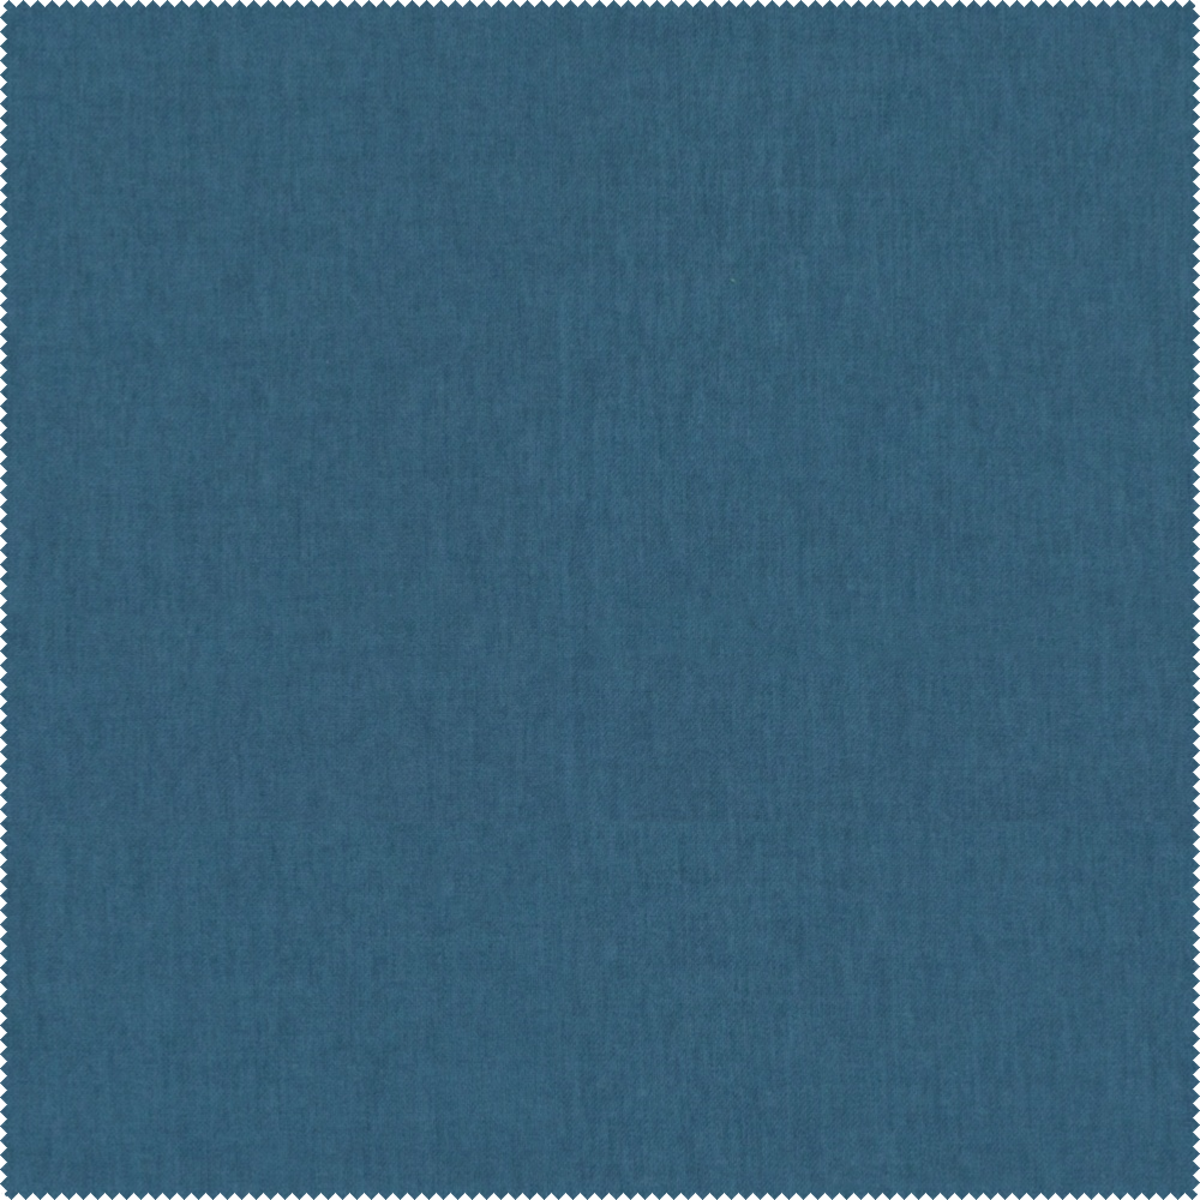 Ciemno niebieska tkanina łatwo czyszcząca Mystic 510 Aquaclean idealnie sprawdzi się na wszystkich elementach tapicerskich.